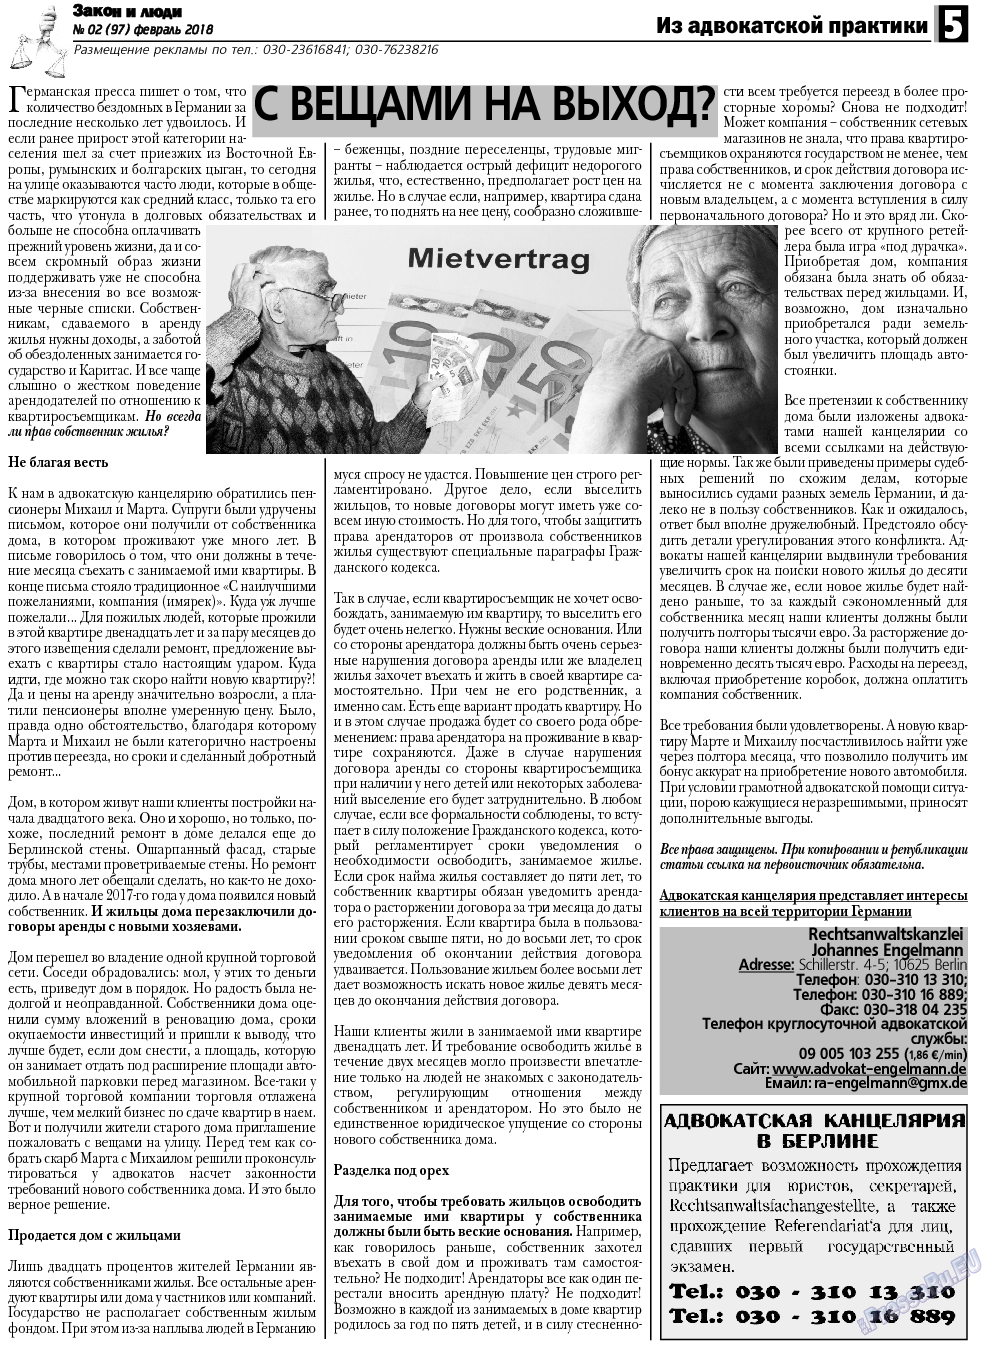 Закон и люди, газета. 2018 №2 стр.5